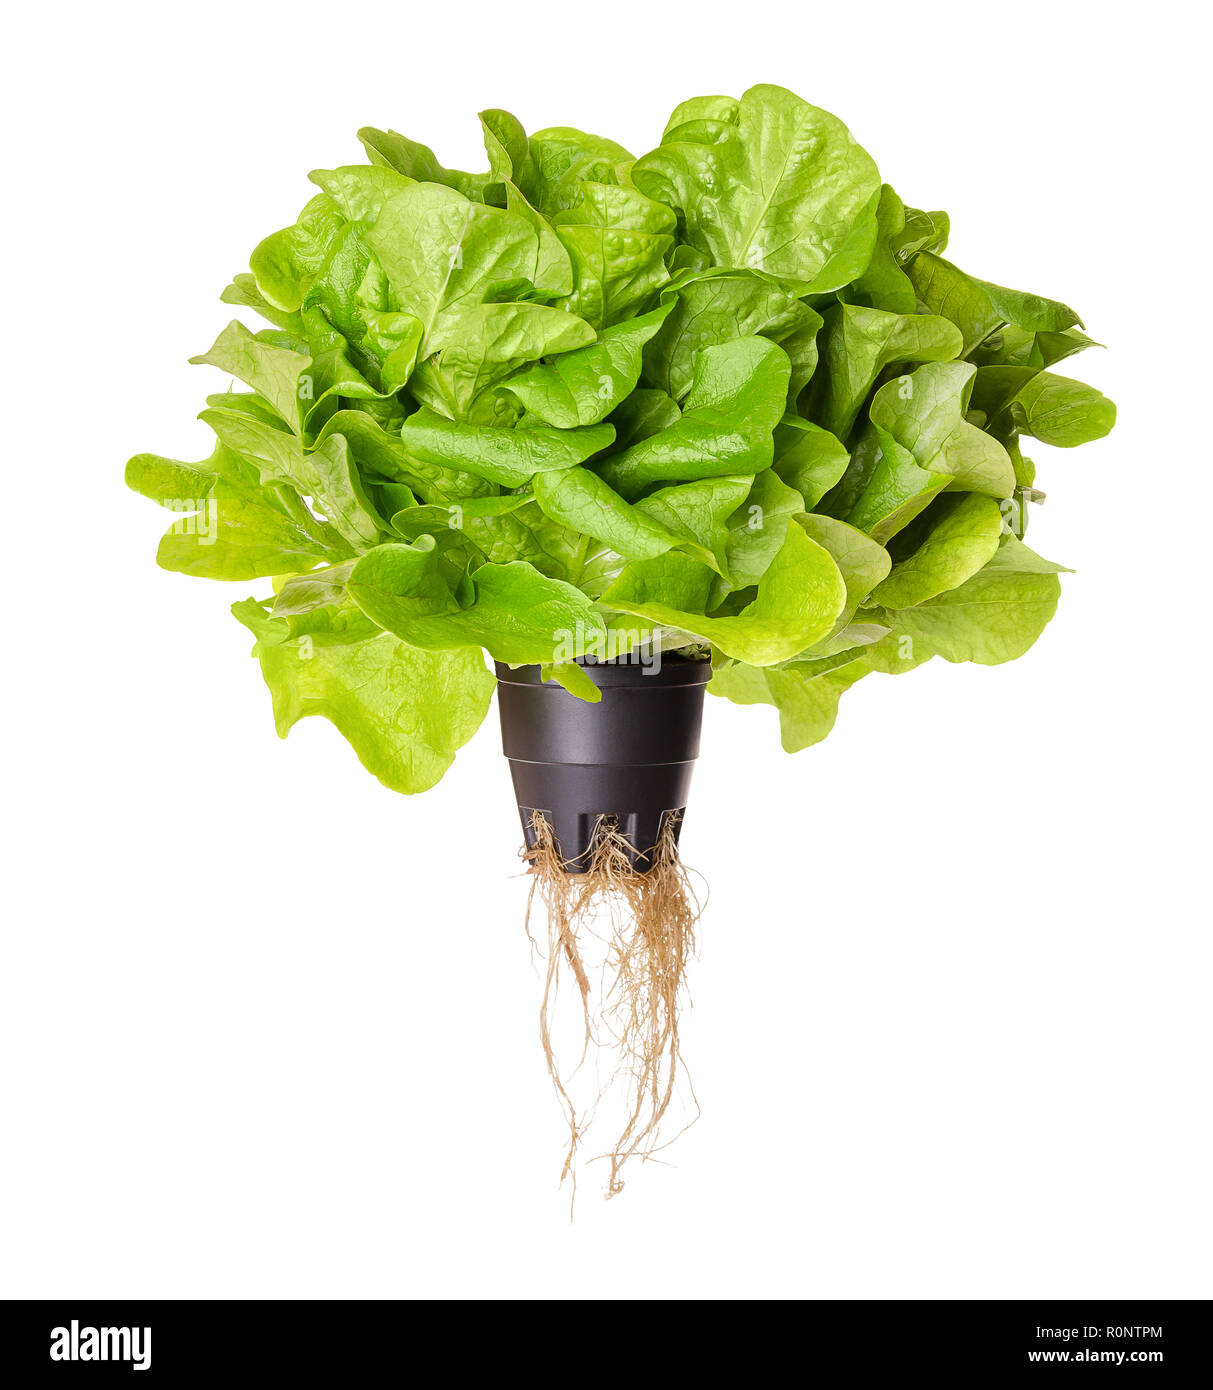 Salanova verde insalata di soggiorno, vista frontale. Foglie di quercia lattuga in contenitore di plastica con radici. Un taglio pronto, allentati foglie di lattuga. Foto Stock